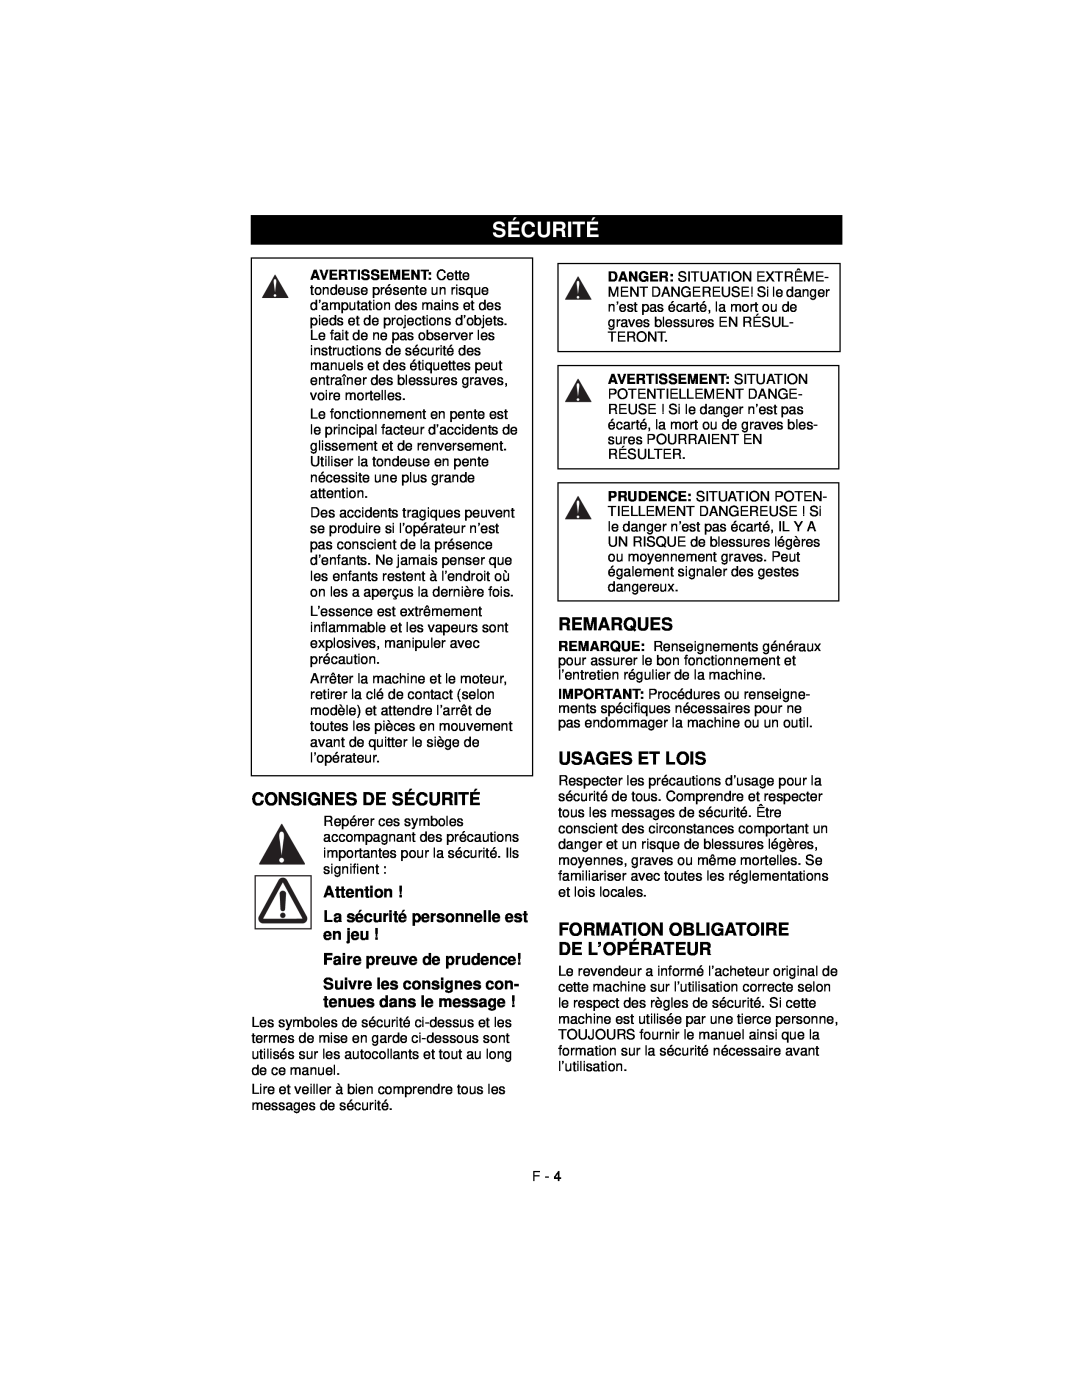 Ariens 911194 warranty Consignes De Sécurité, Remarques, Usages Et Lois, Formation Obligatoire De L’Opérateur 